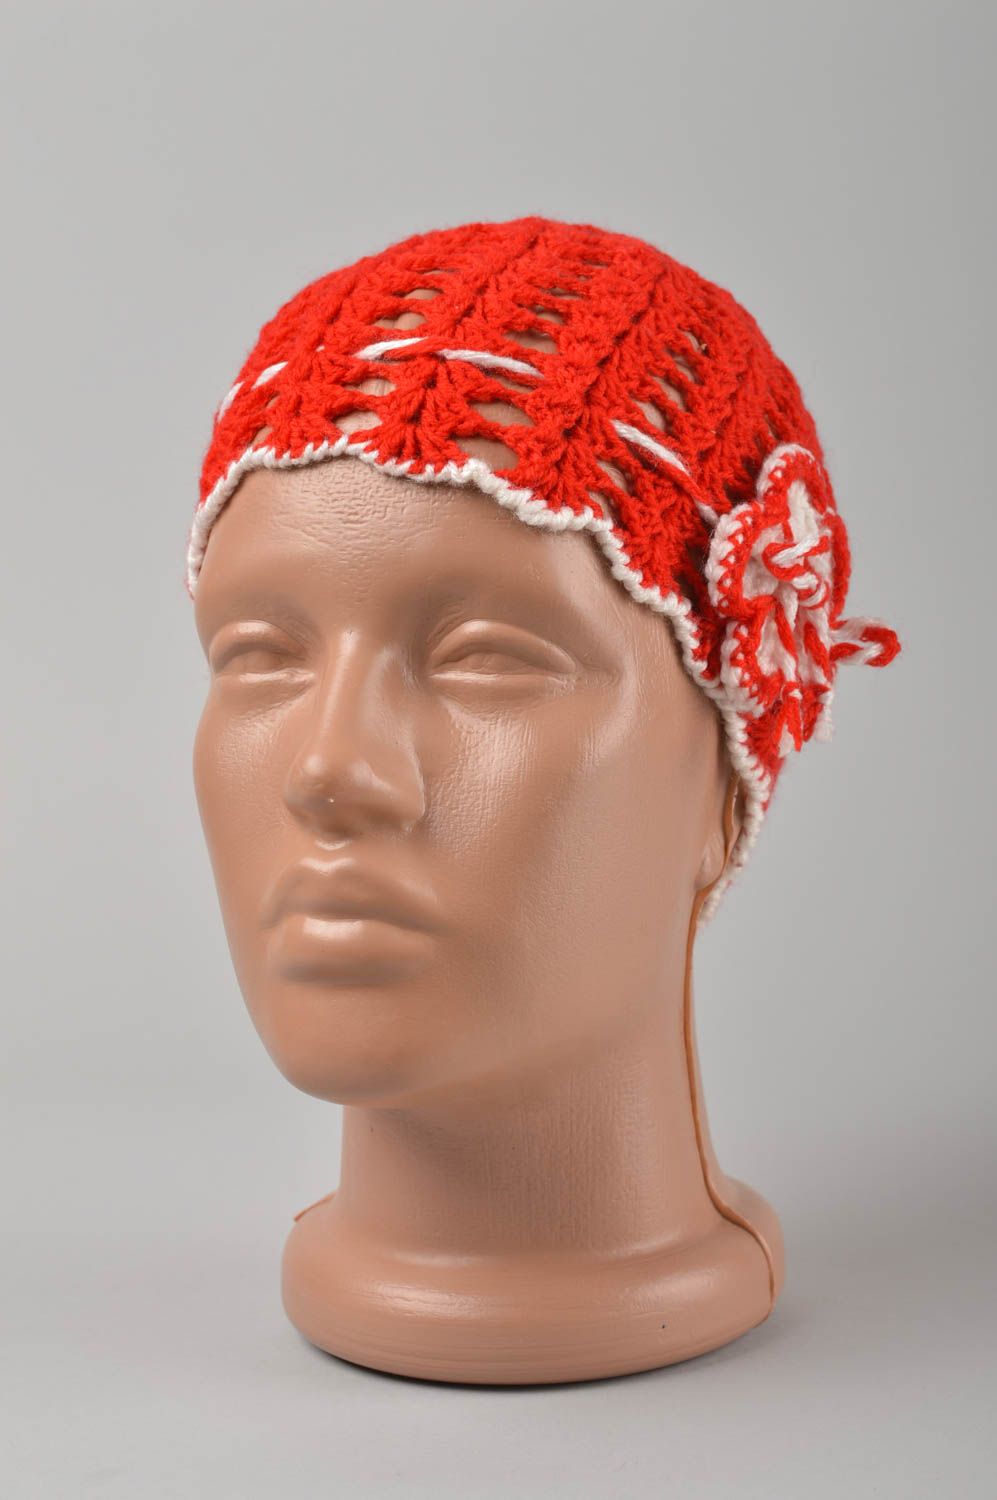 Handmade hat women hat designer hat baby hat crocheted hat gift ideas warm hat photo 1